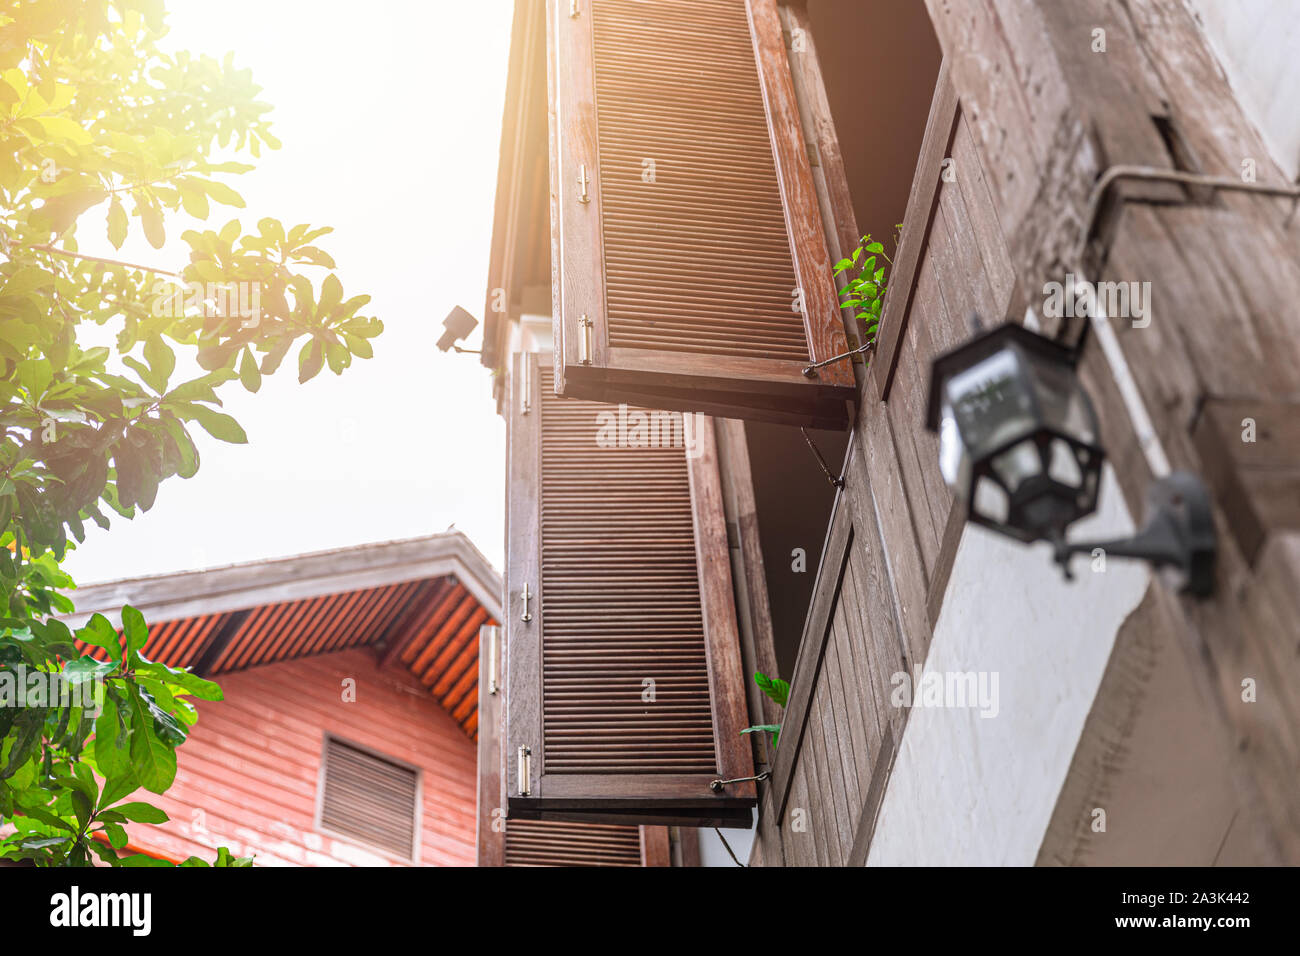 Eco home tradizionali asiatici casa in legno progettare windows con flusso di aria sulla griglia del vento per il raffreddamento home in estate a basso consumo di energia elettrica Foto Stock